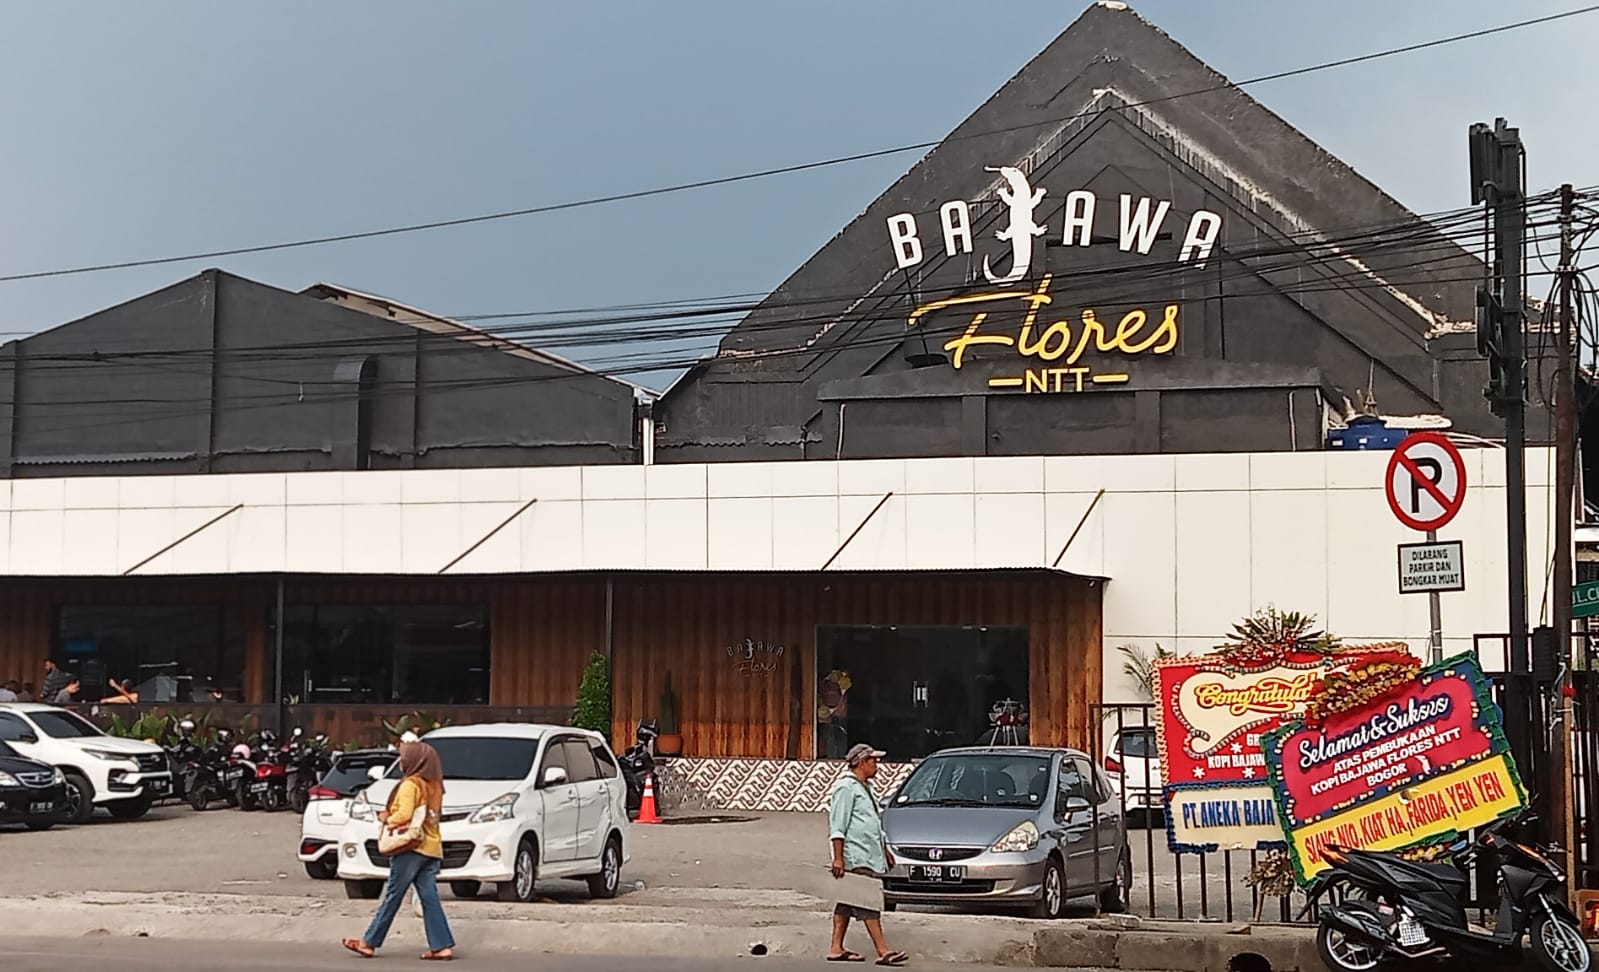 Diduga tidak memiliki izin usaha, Satpol PP Kota Bogor masih belum melakukan penyegelan terhadap Kafe dan Resto Bajawa Flores.